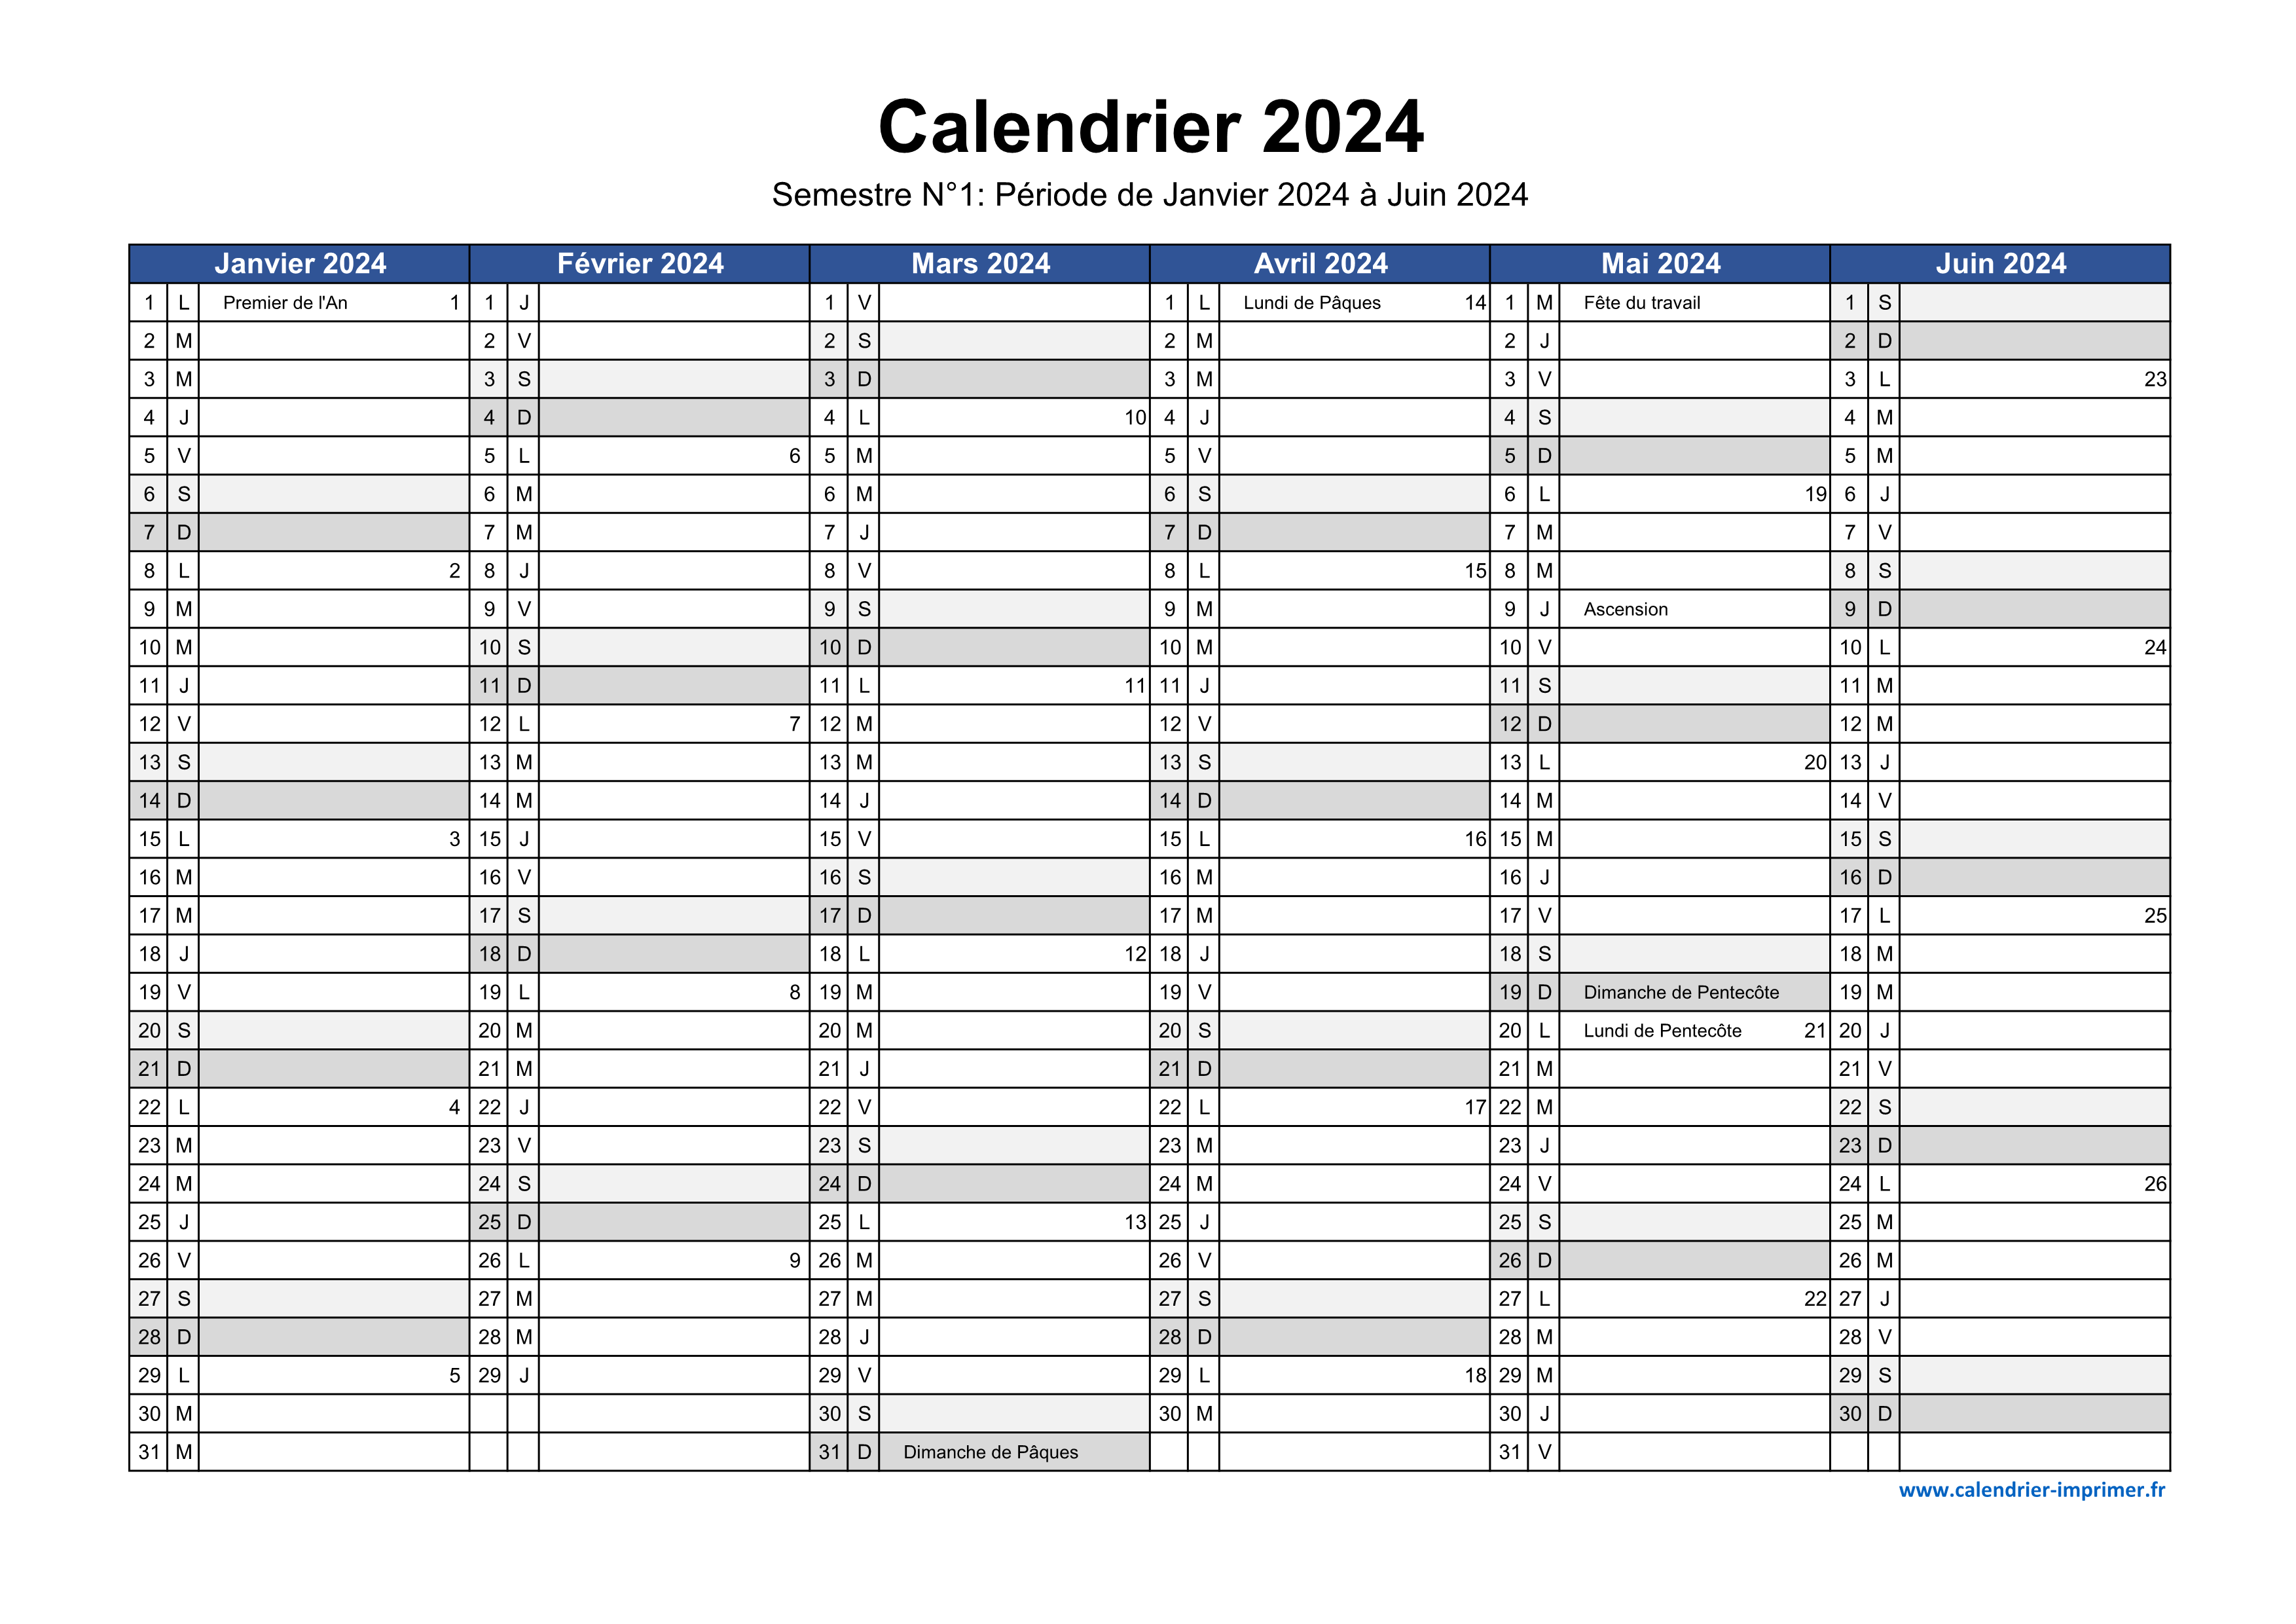 Calendrier 2024 imprimable, Calendrier 2024 téléchargeable